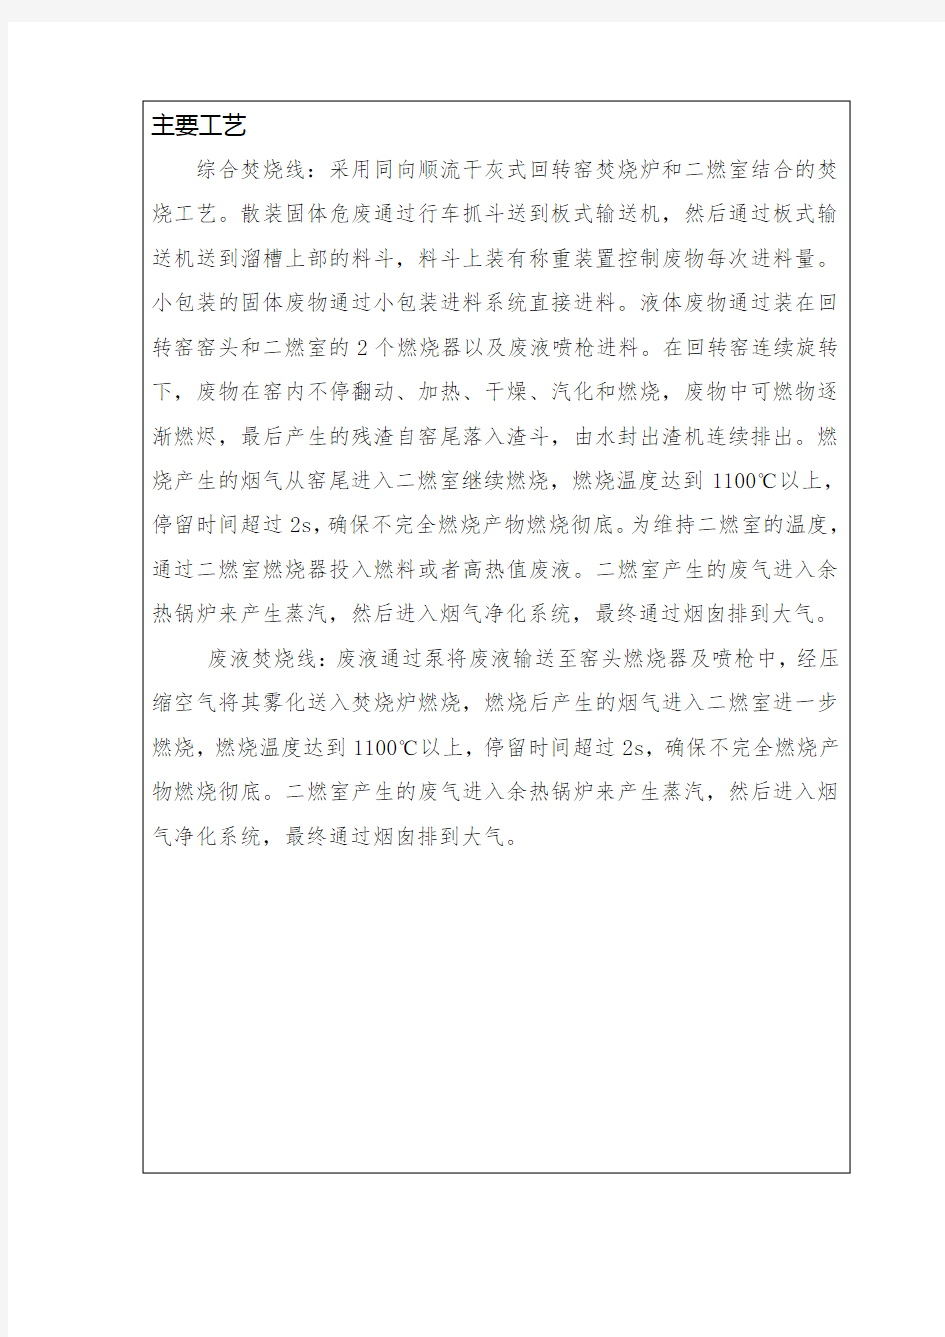 南京威立雅同骏环境服务有限公司申领《危险废物经营许可证》受理公示